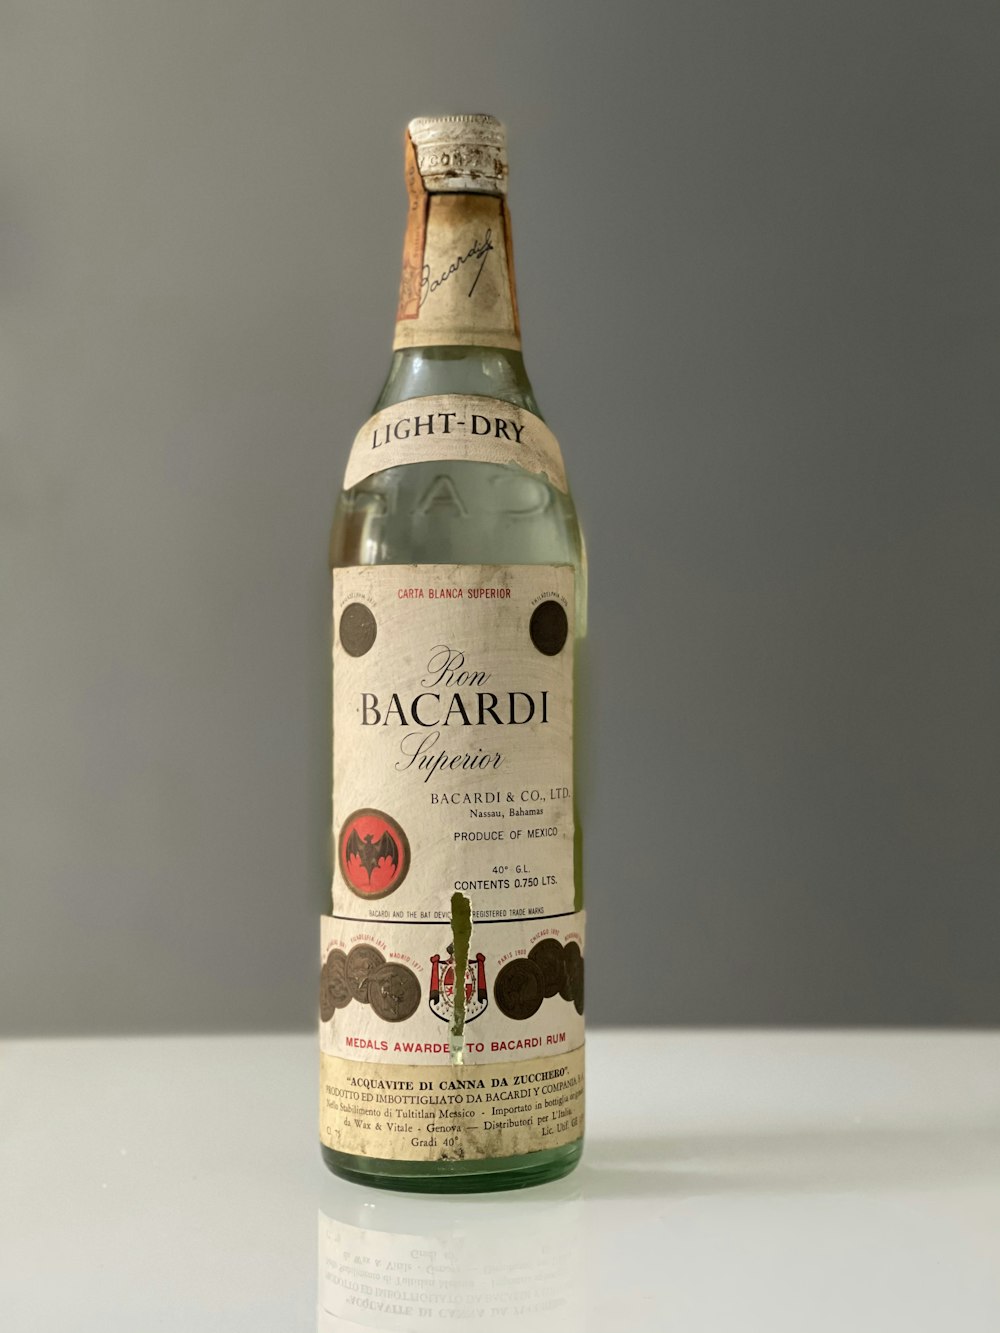 uma garrafa de vinho bacardi sentada em uma mesa